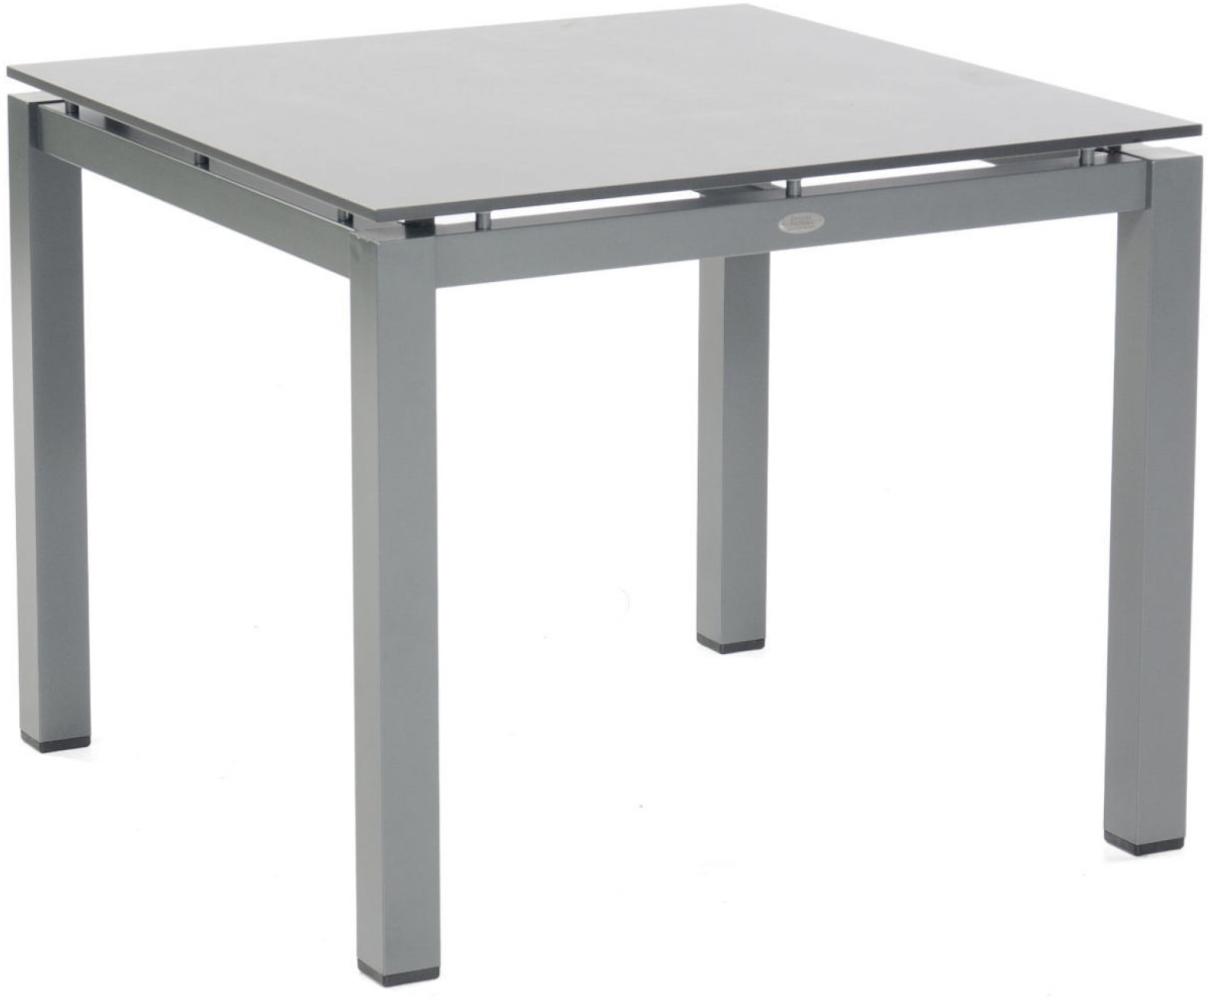 Sonnenpartner Gartentisch Base 90x90 cm Aluminium anthrazit Tischsystem Tischplatte HP Tischplatte Pure Teakholz natur 80050525 Bild 1